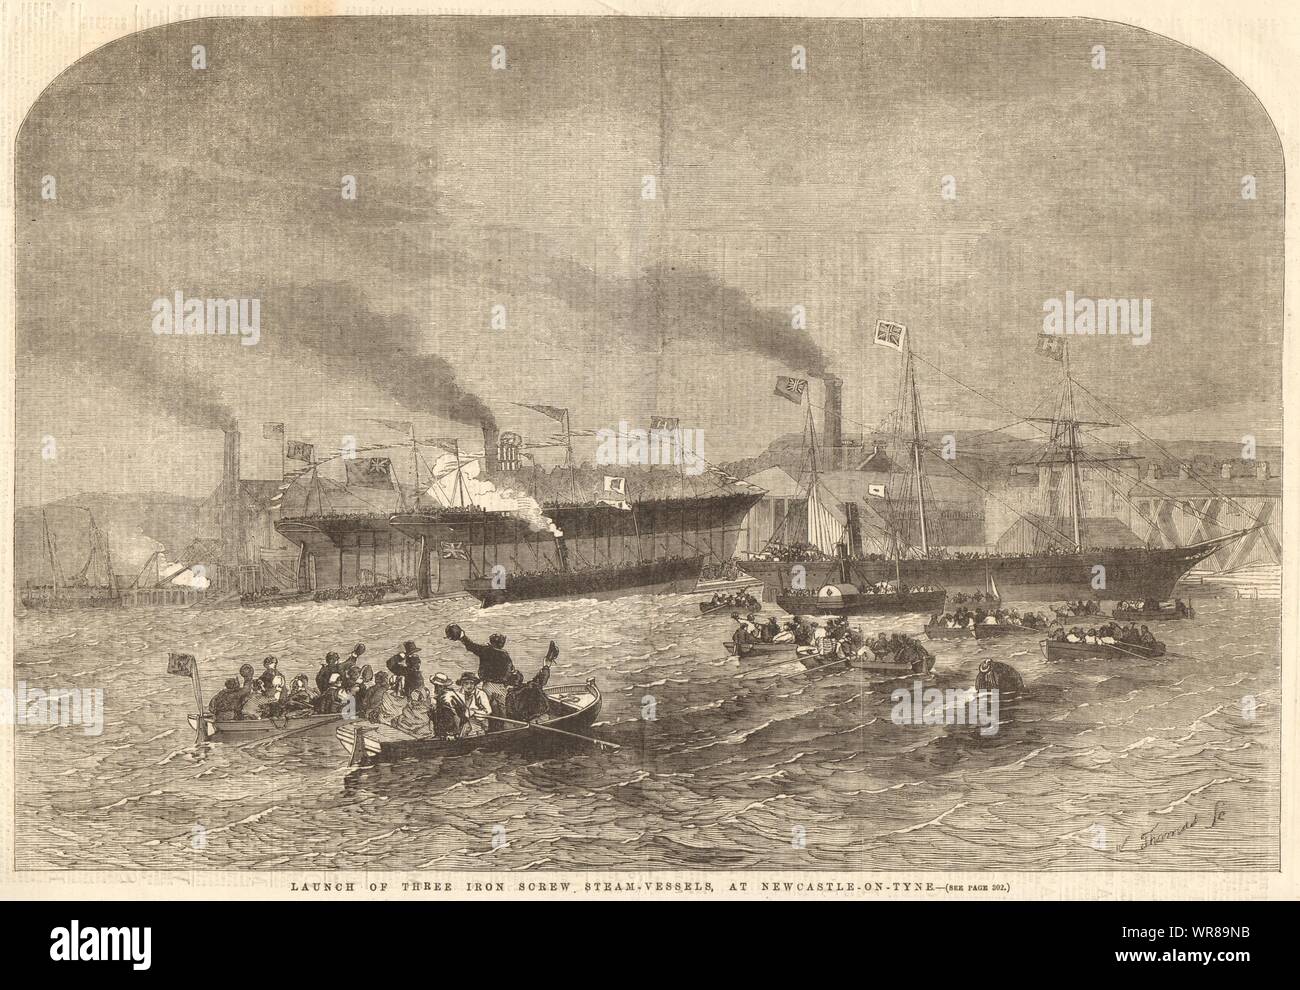 Markteinführung von drei Eisen schraube Dampf - Schiffen, in Newcastle-on-Tyne. Schiffe, 1856 Stockfoto